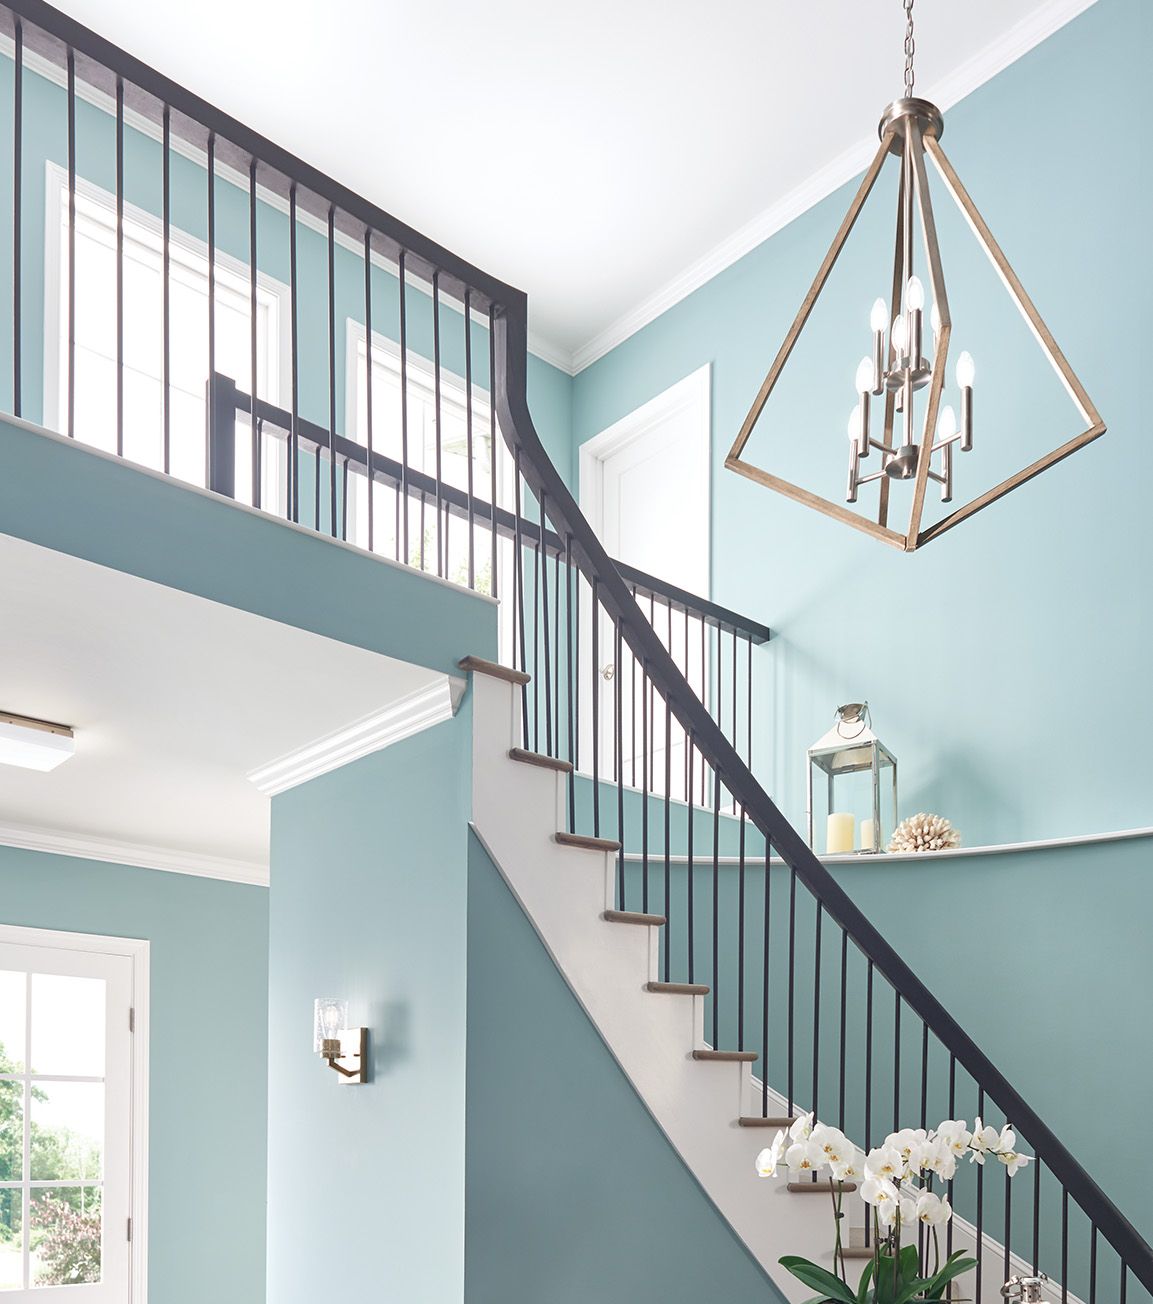 angular chandelier above bright blue stairway